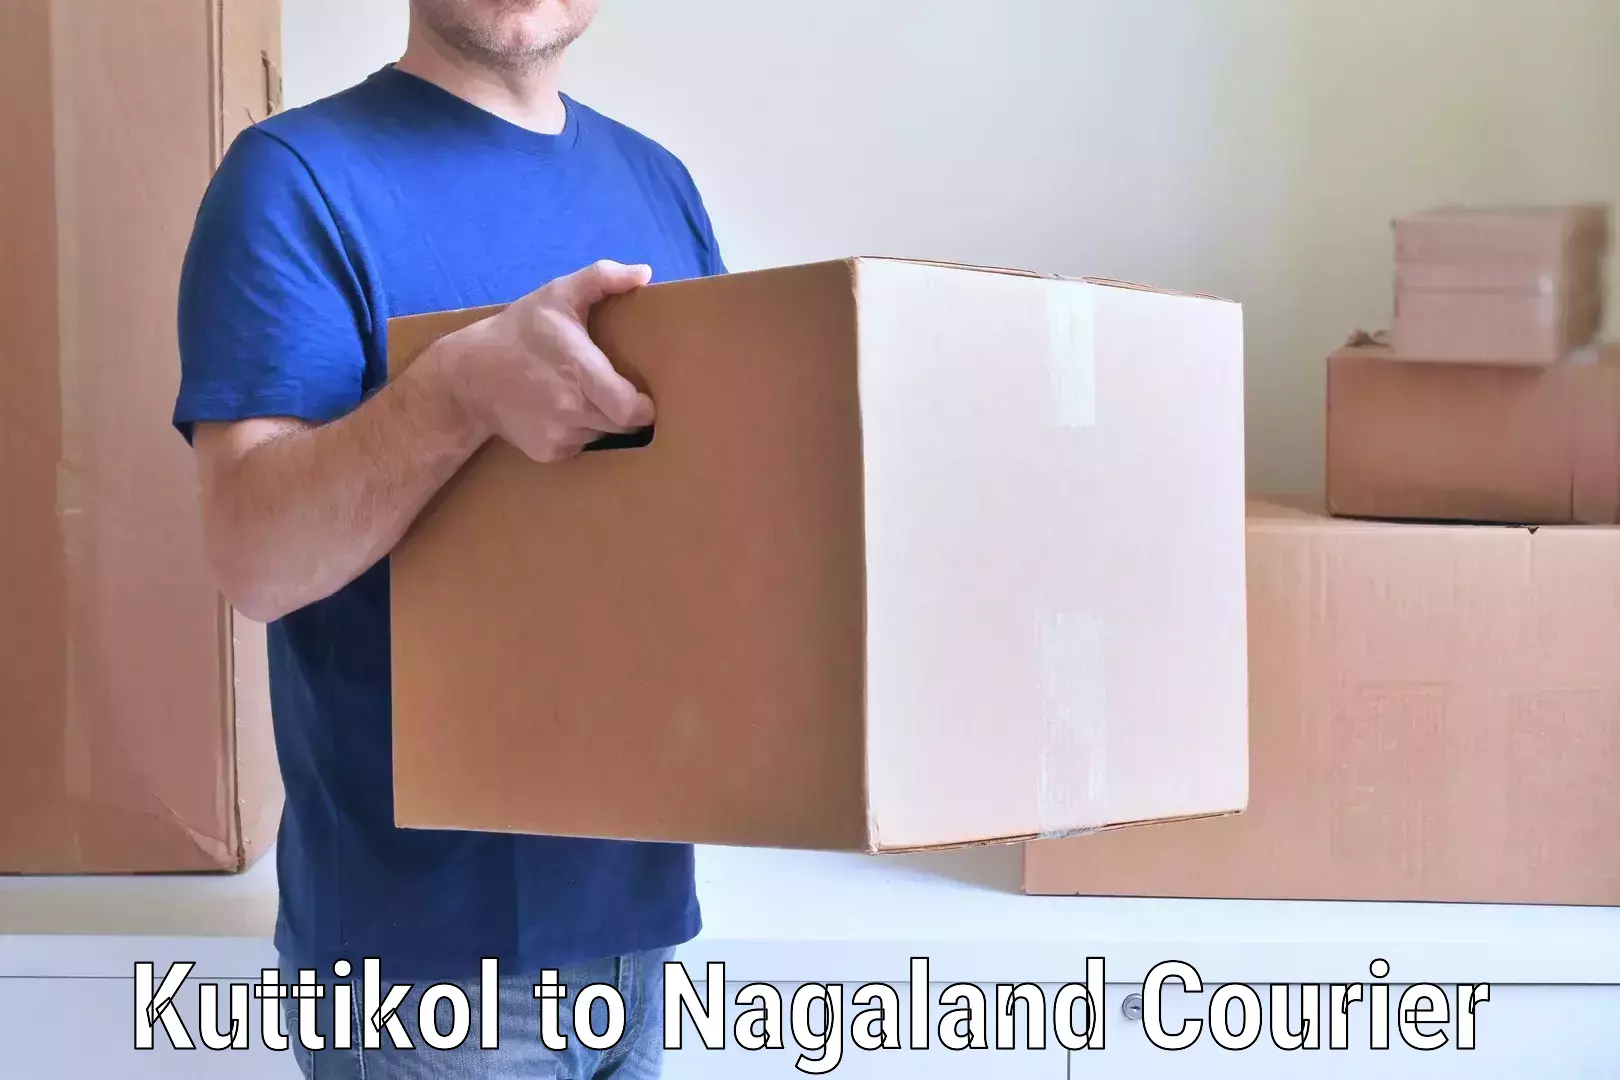 Furniture transport specialists Kuttikol to NIT Nagaland